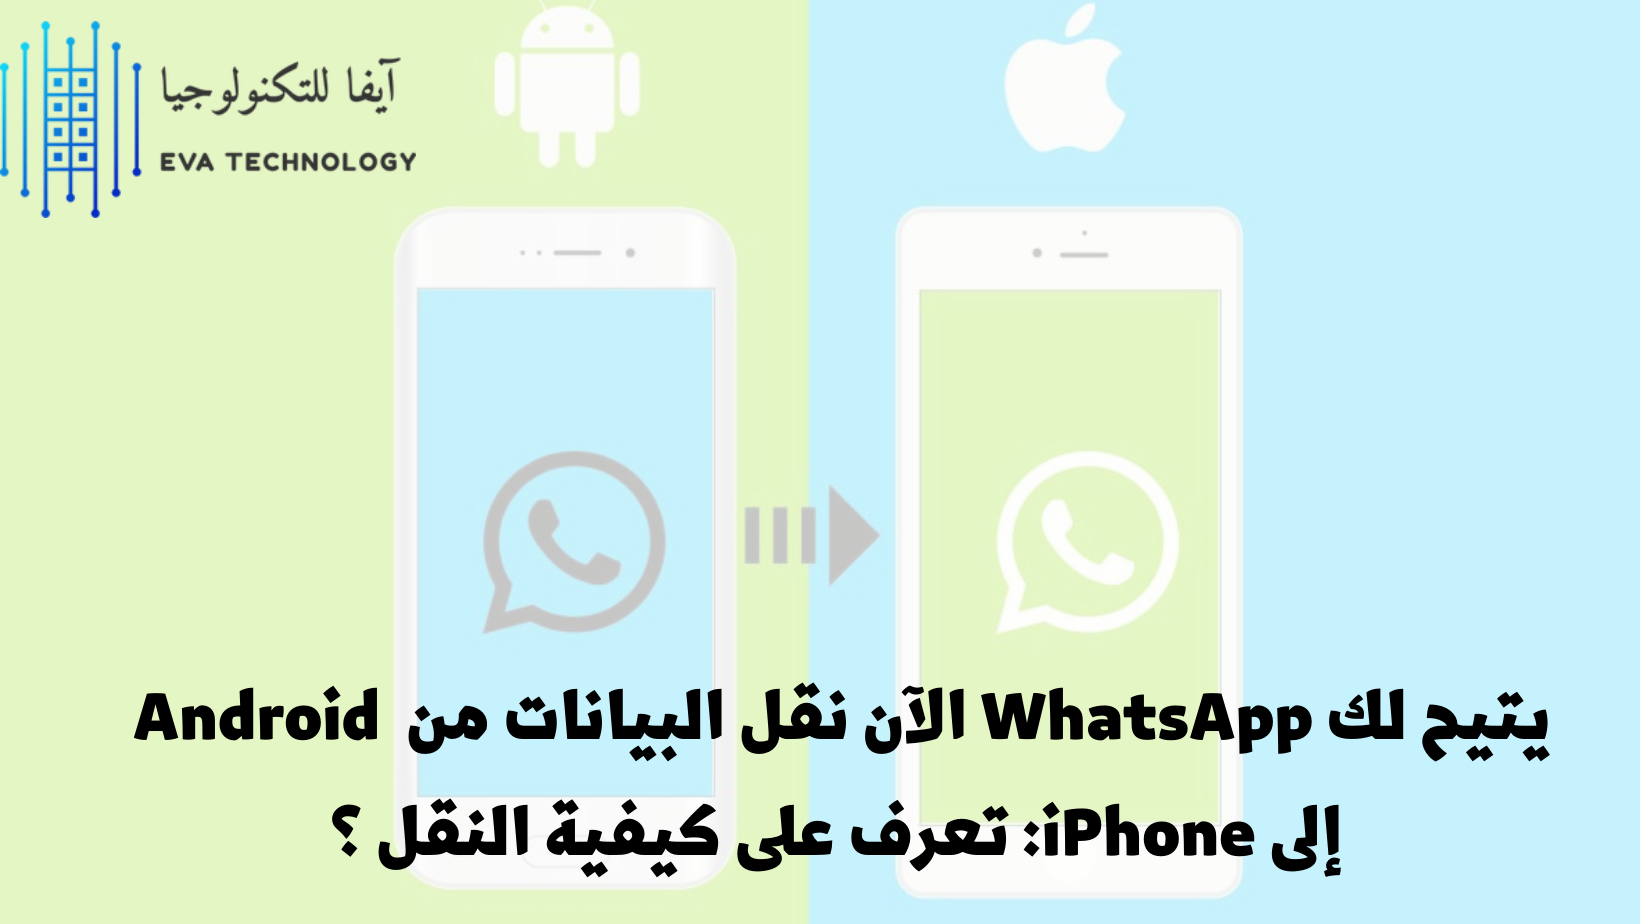 يتيح لك WhatsApp الآن نقل البيانات من Android إلى iPhone تعرف على كيفية النقل ؟